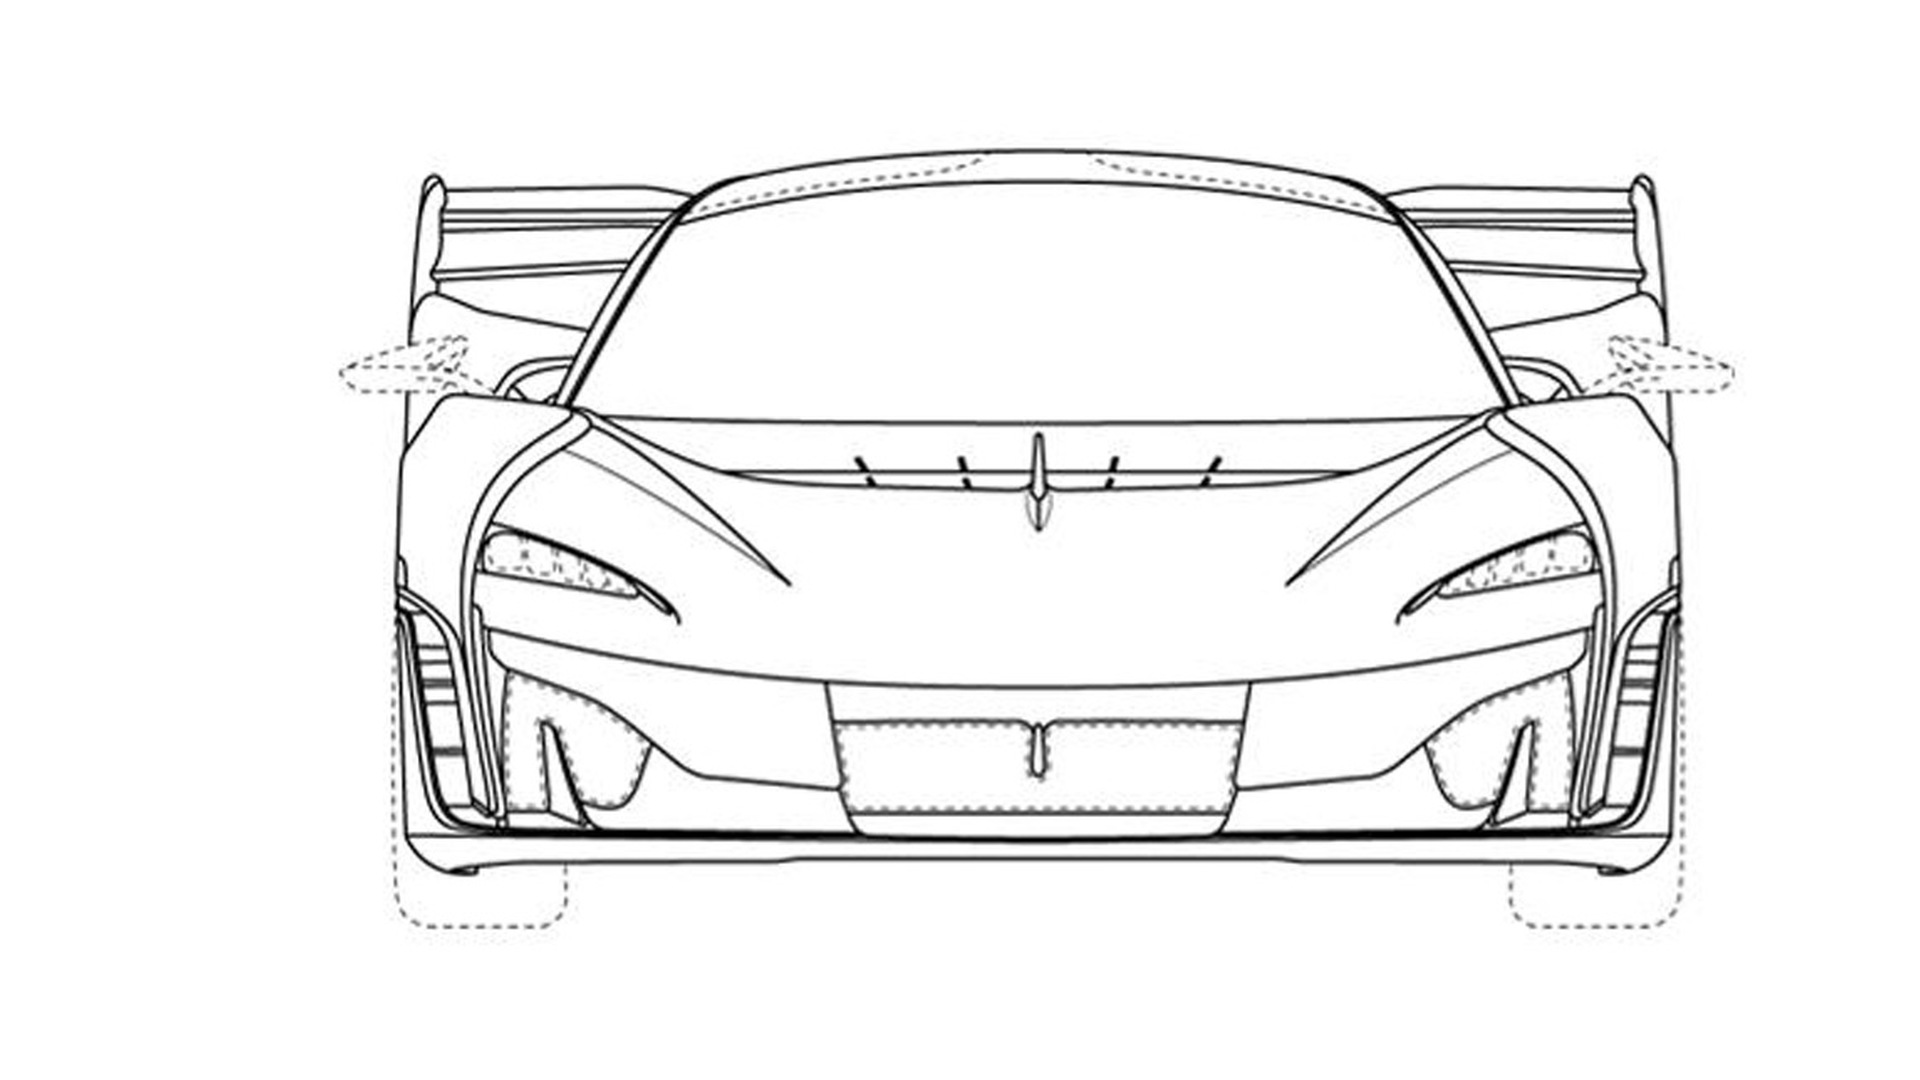 Patent drawings of possible McLaren supercar - Photo credit: Taycan EV Forum/J-PlatPat